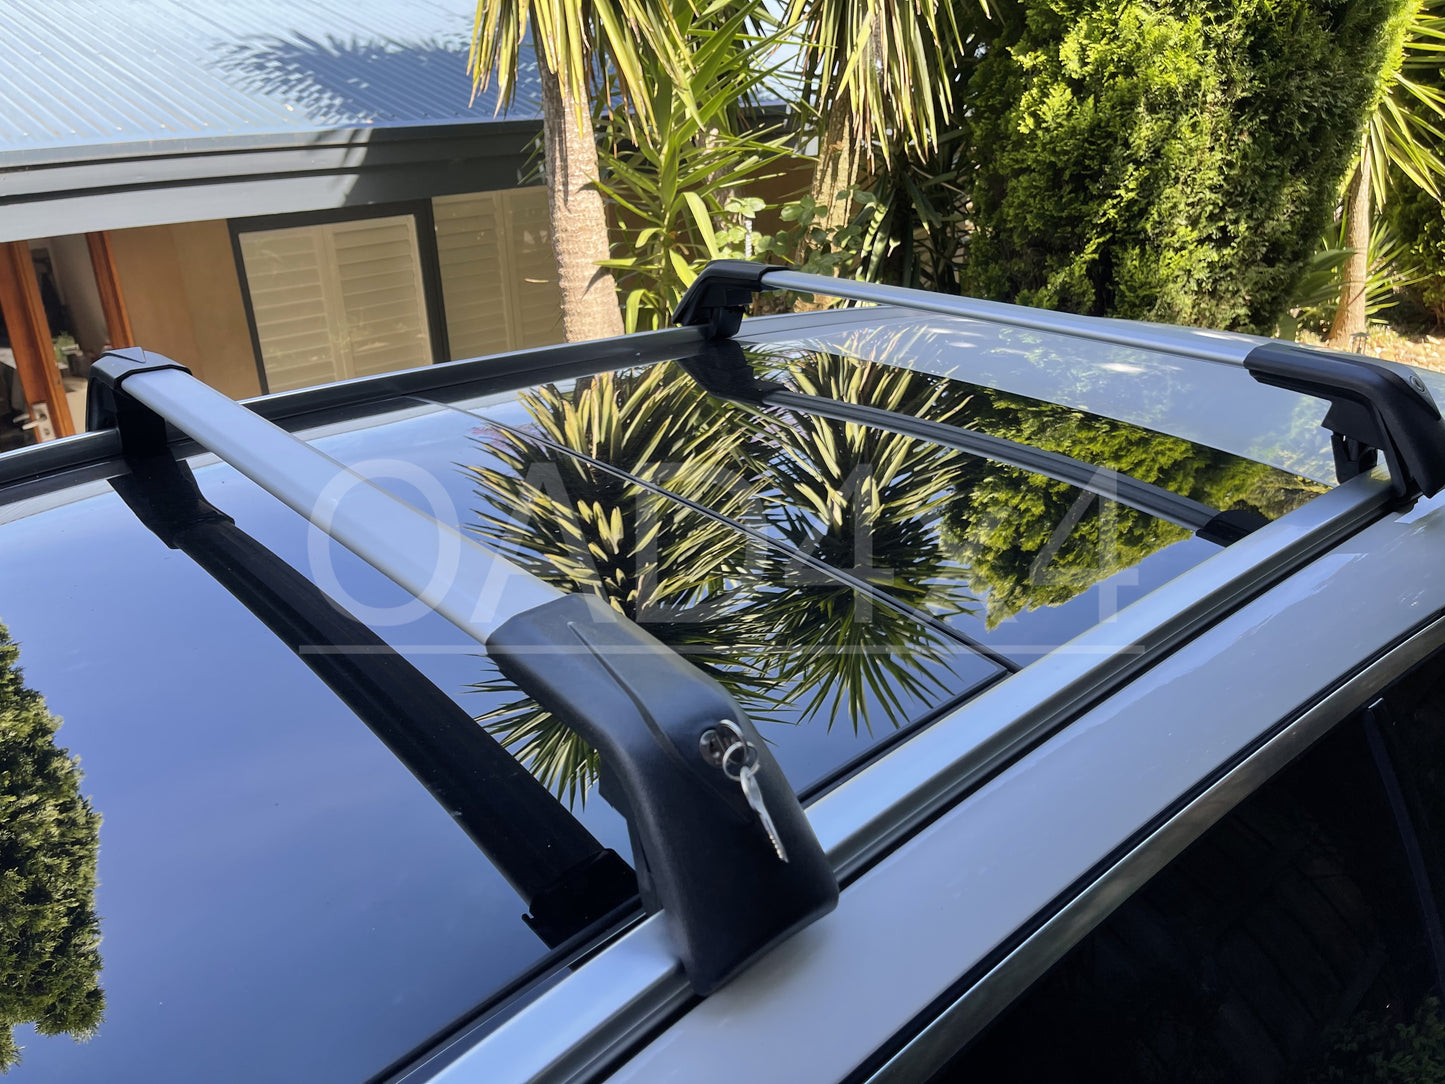 1 Pair Aluminum Silver Cross Bar Roof Racks Baggage Holder for Peugeot 5008 2018+ Clamp in Flush Rail